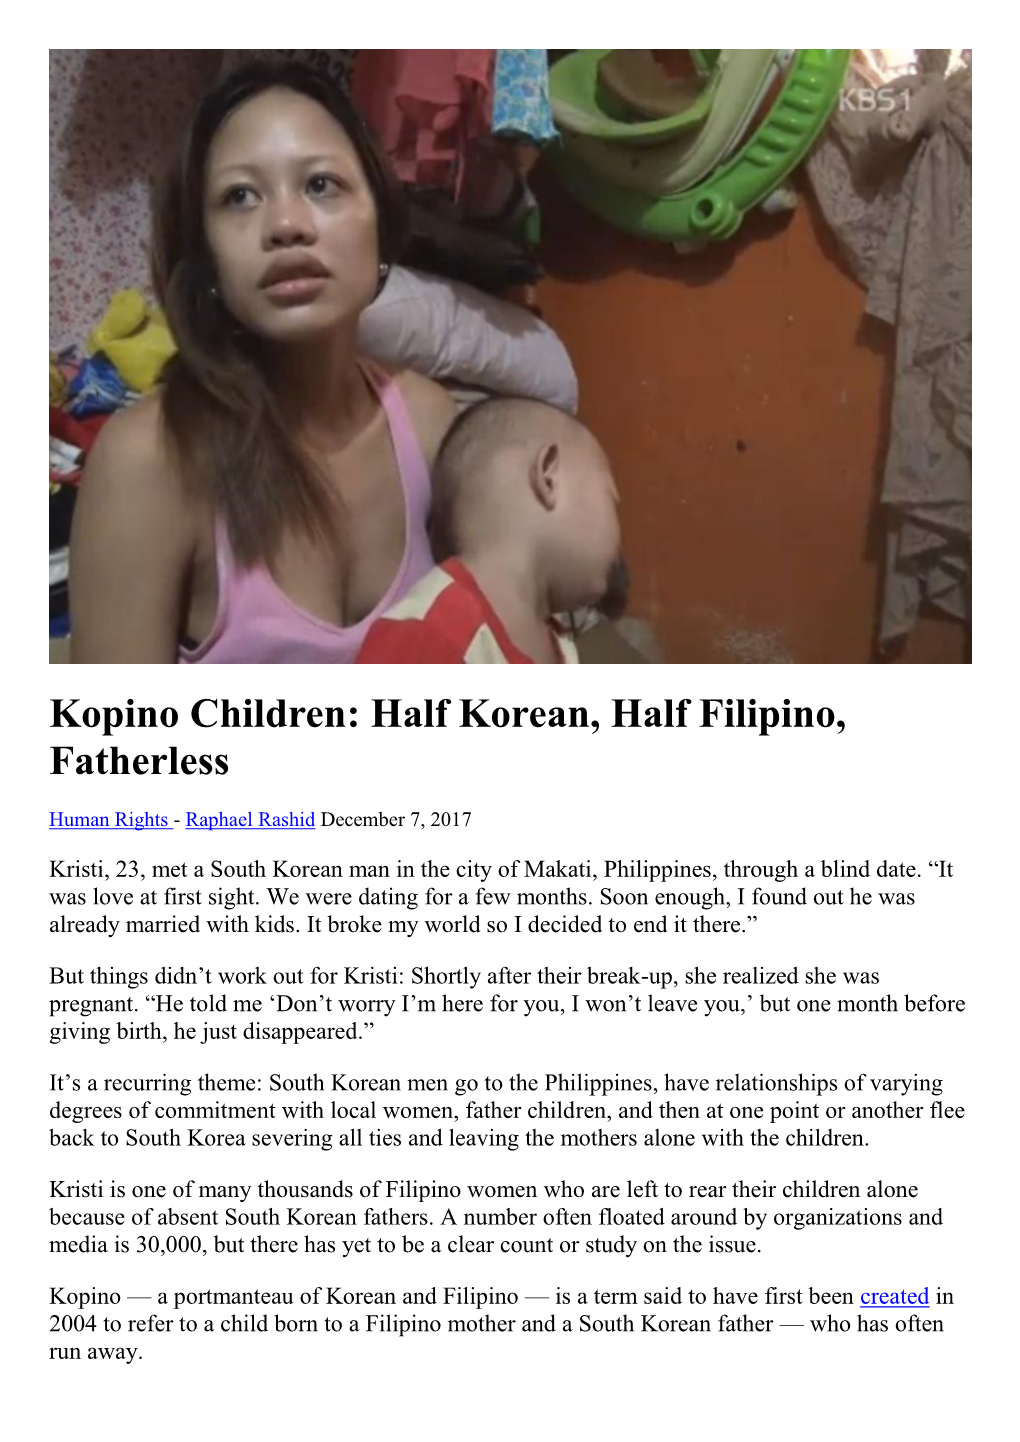 Kopino Children: Half Korean, Half Filipino, Fatherless